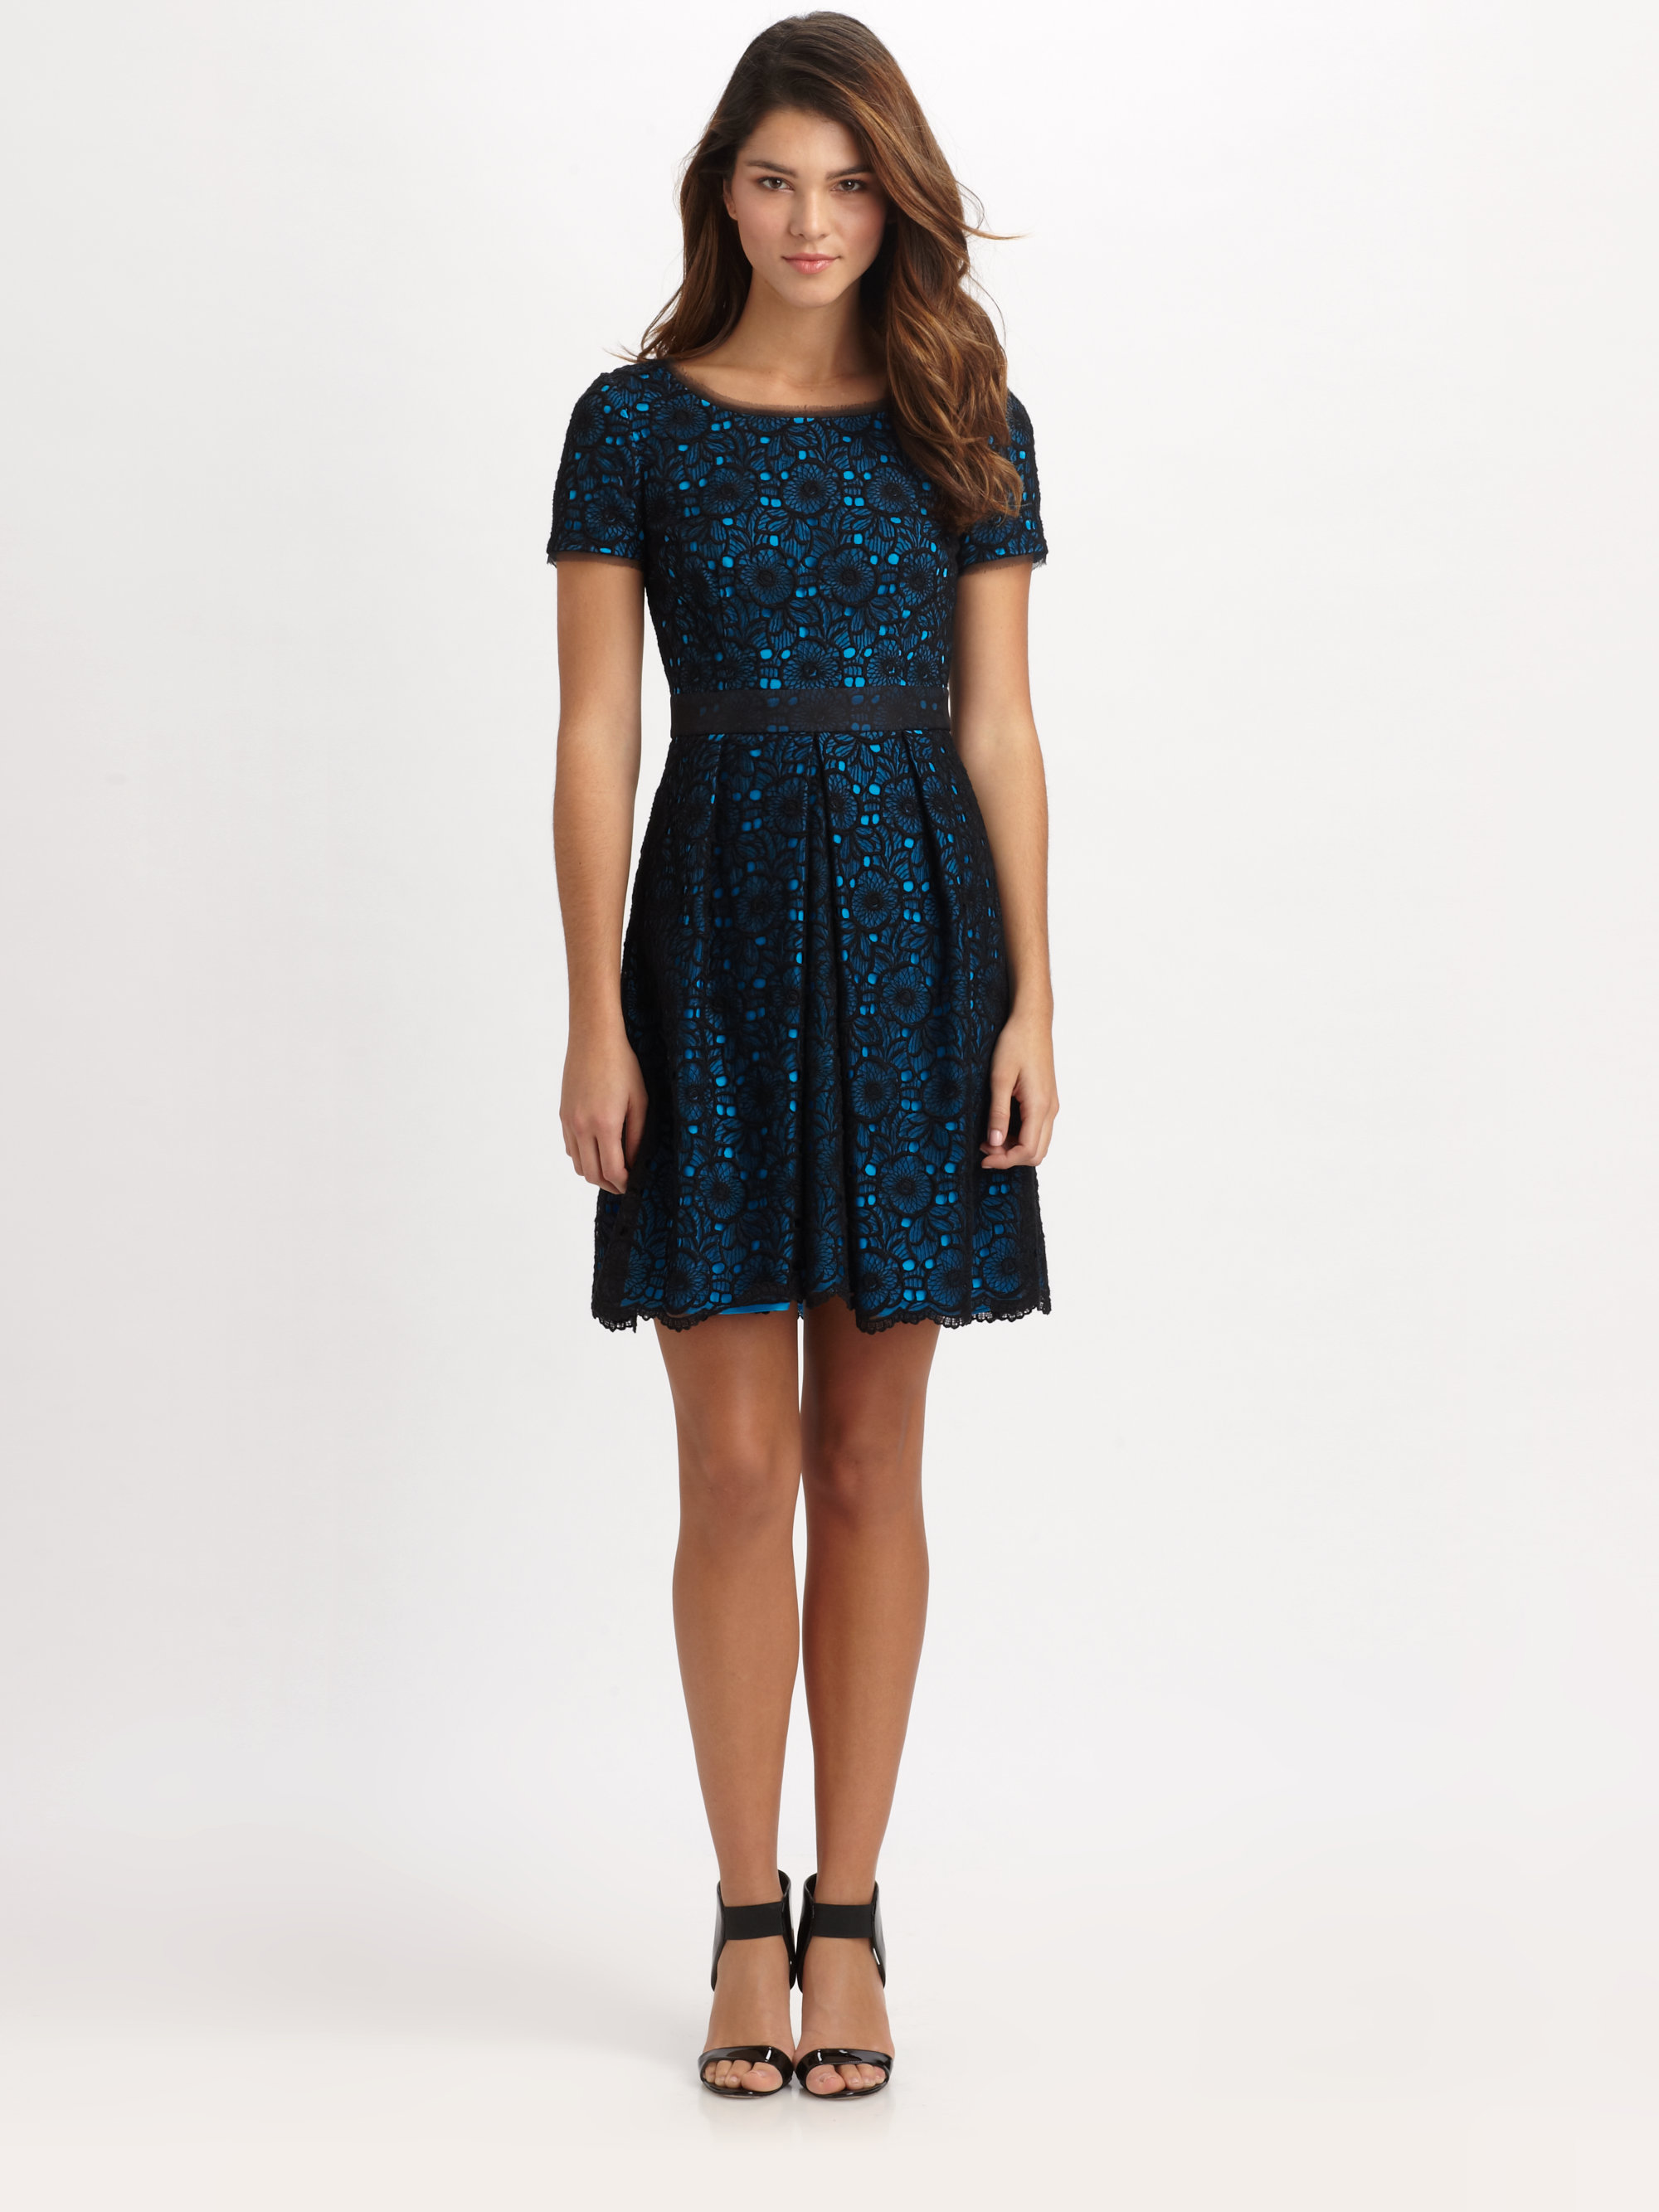 Lyst - Elie tahari Glenda Lace Dress in Blue2000 x 2667